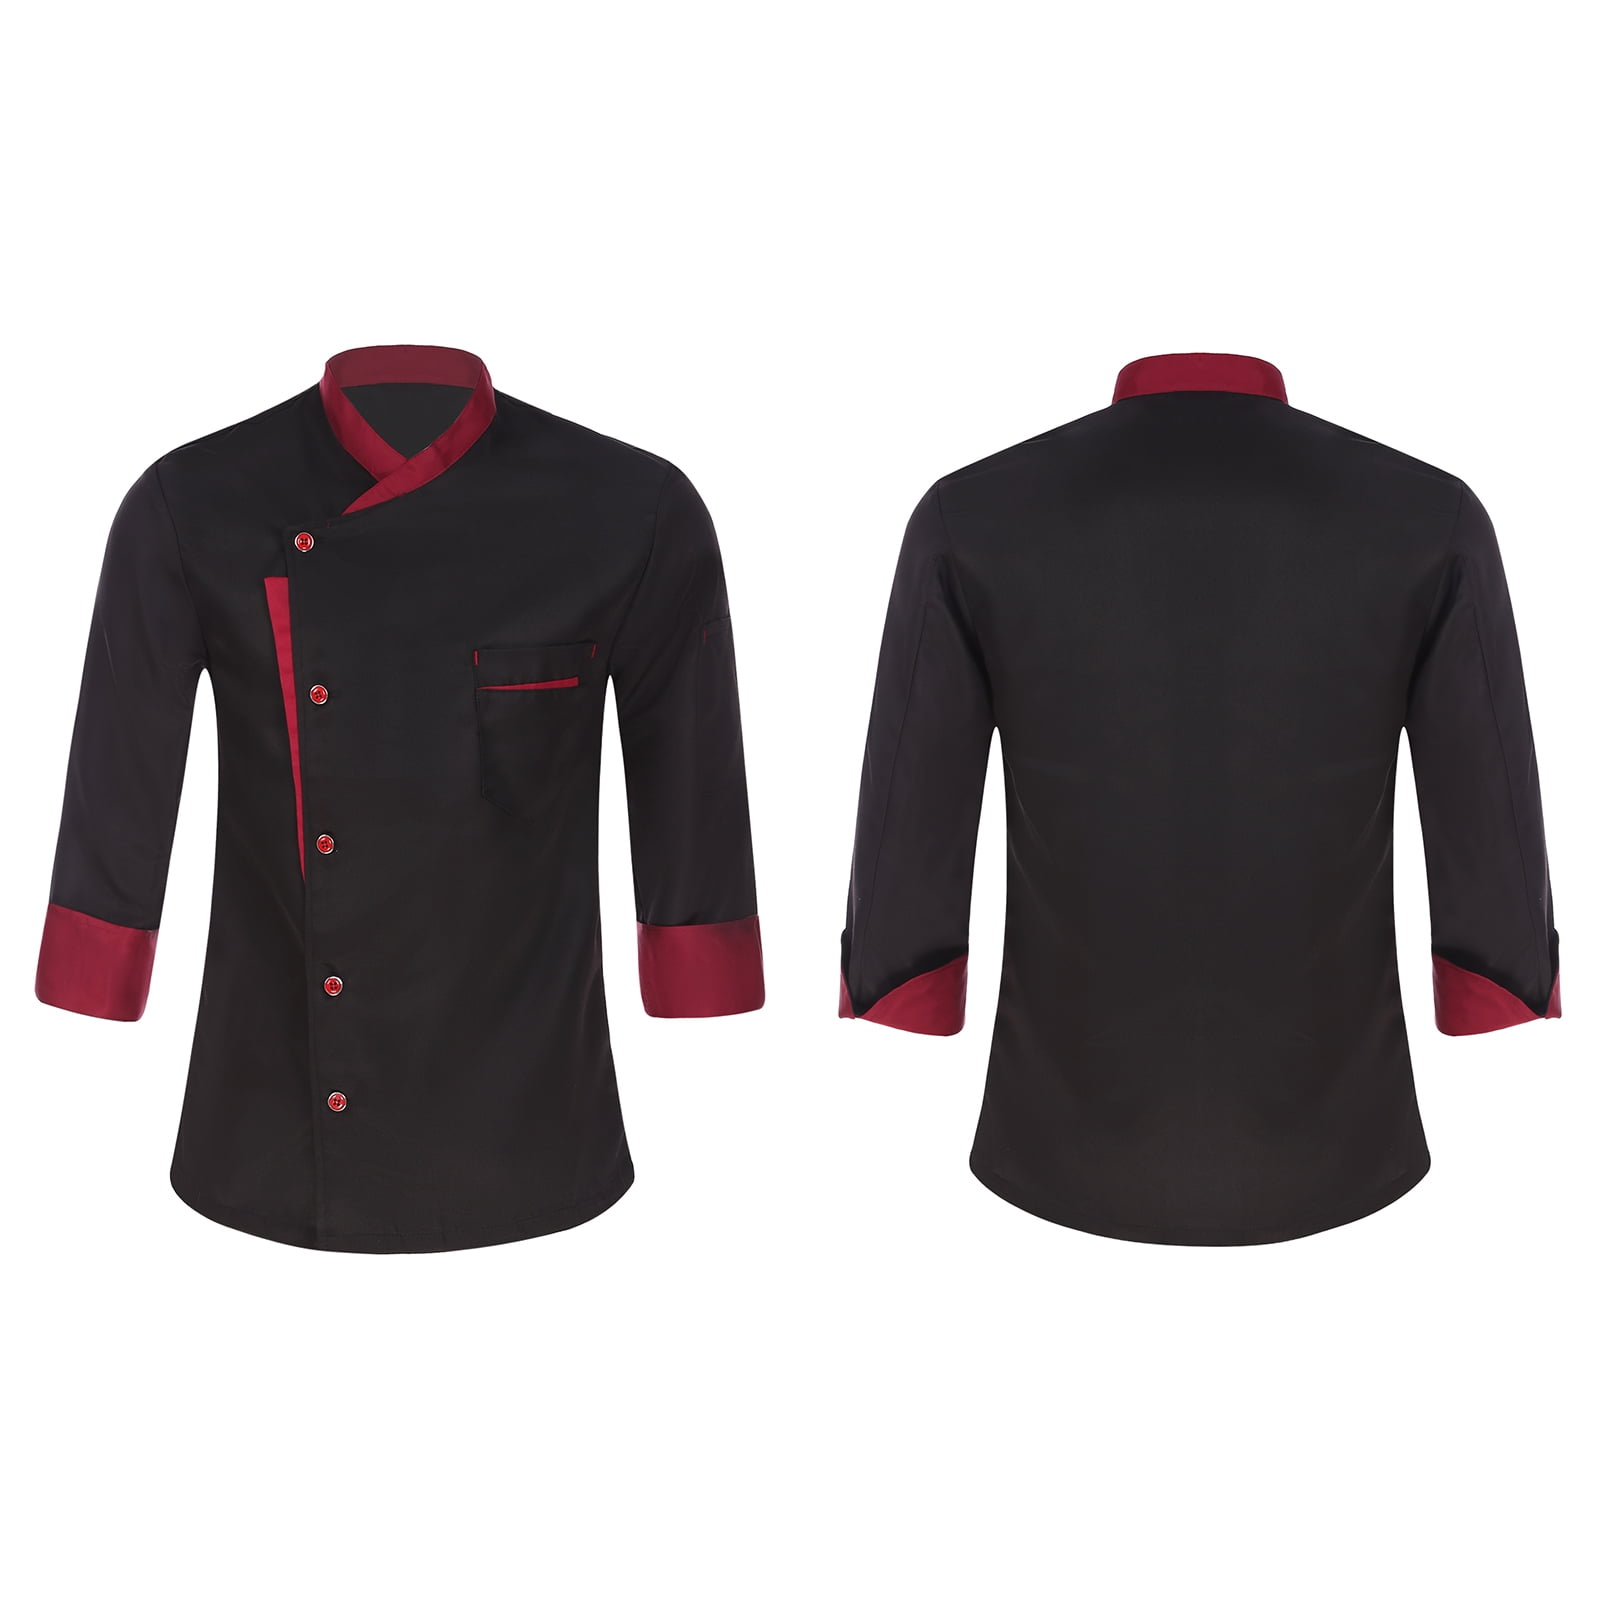 Custom Chef Jacket Murano Design Online at AllStar Logo